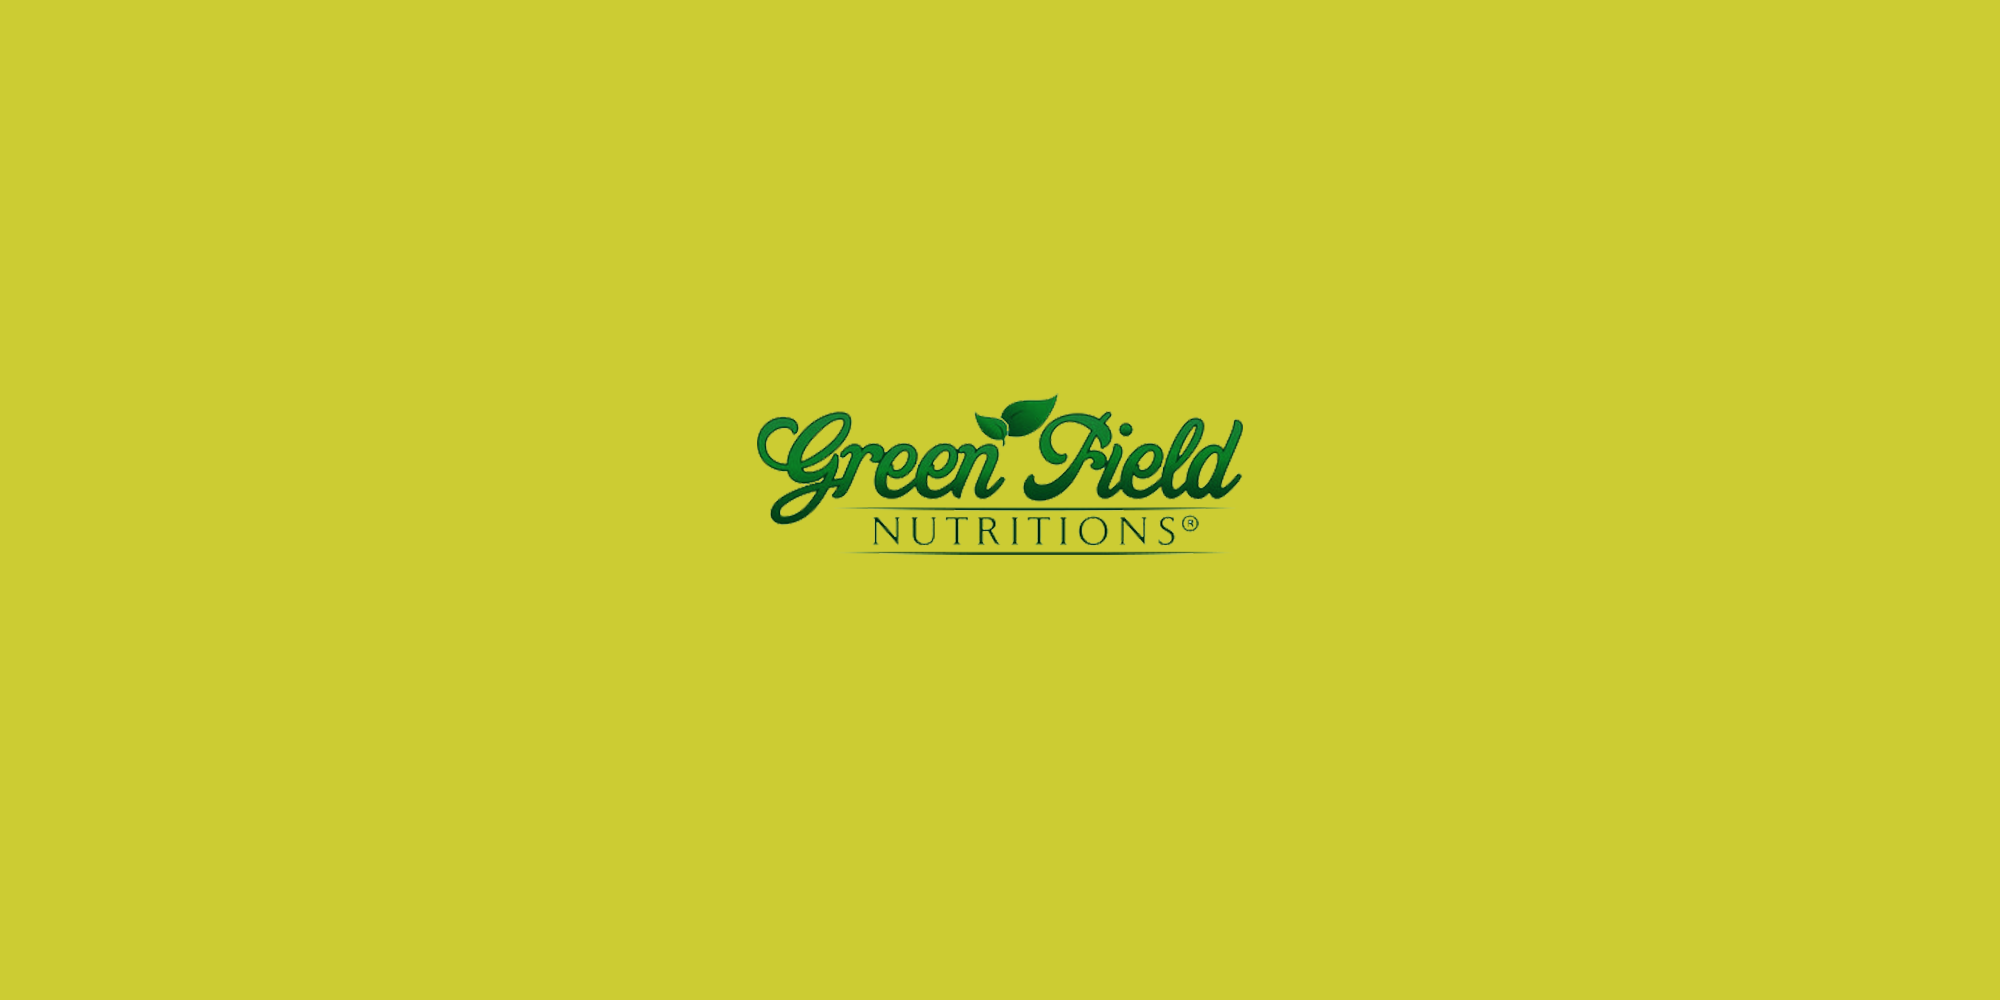 Green Field Nutritions